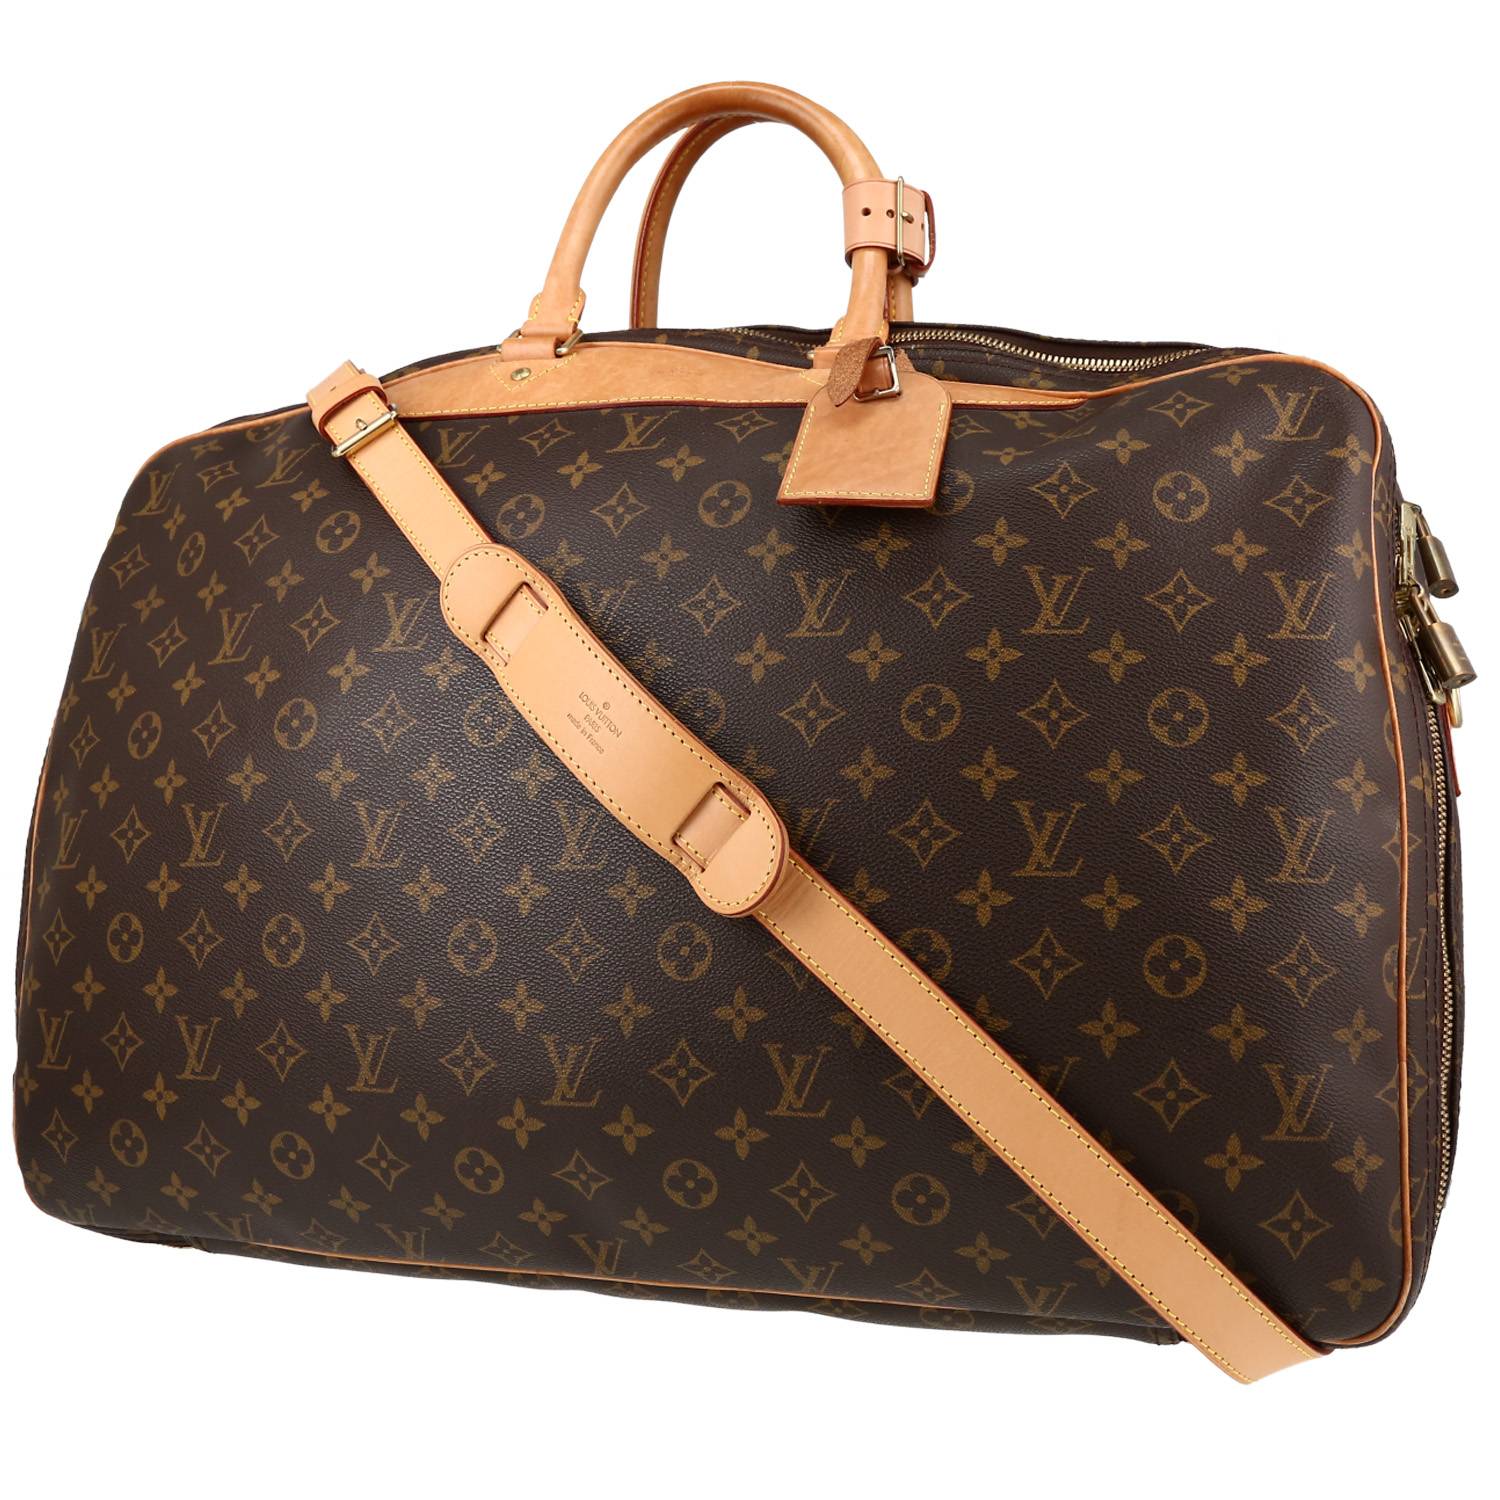 Louis Vuitton Alize Travel bag 403391